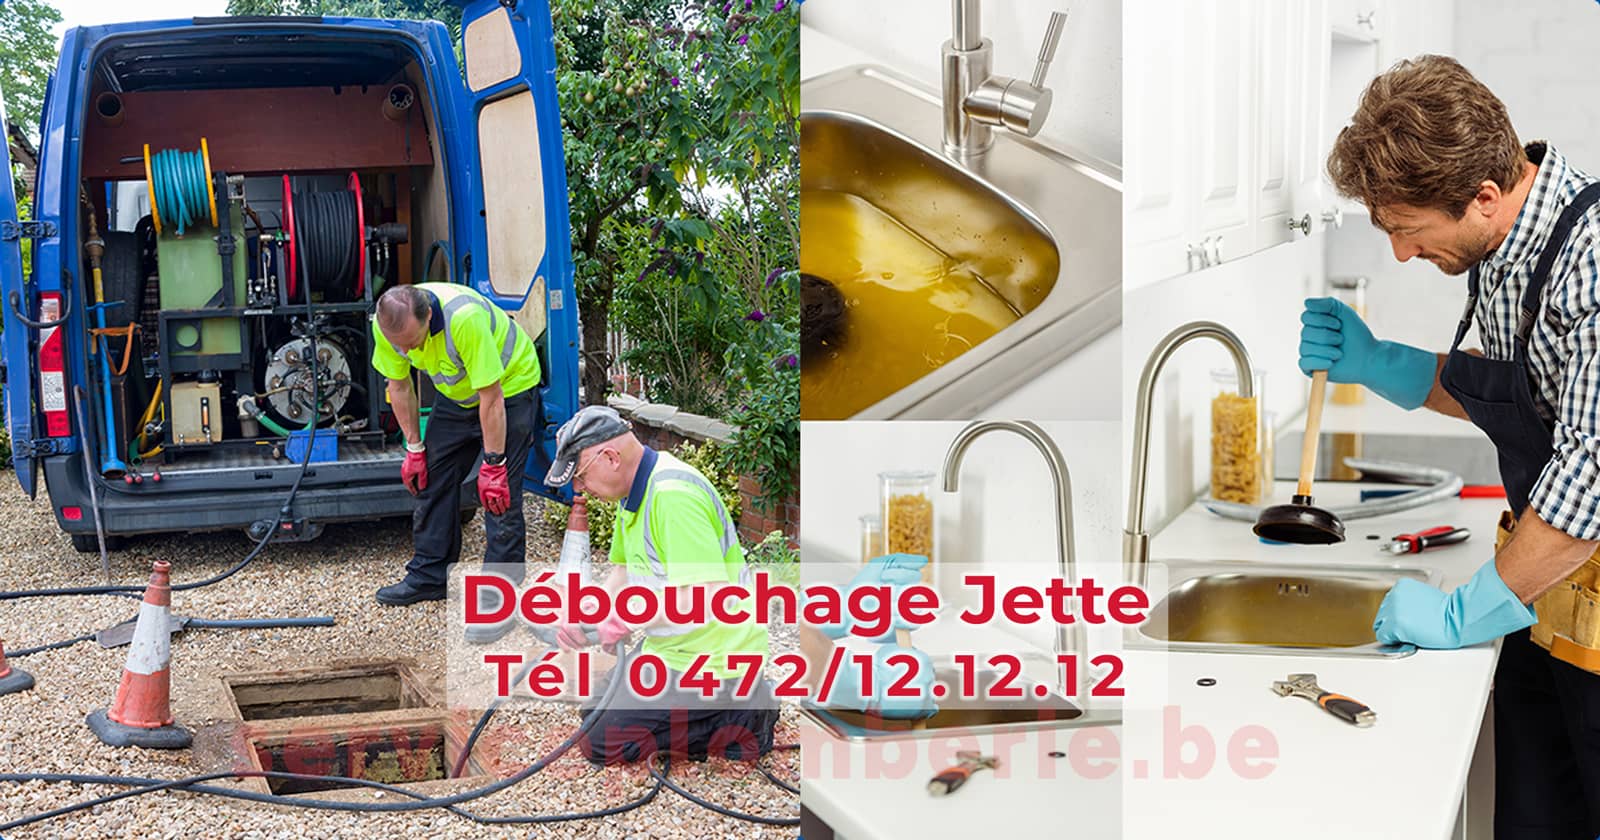 Débouchage Jette d'égout Service Plomberie Tél 0472/12.12.12